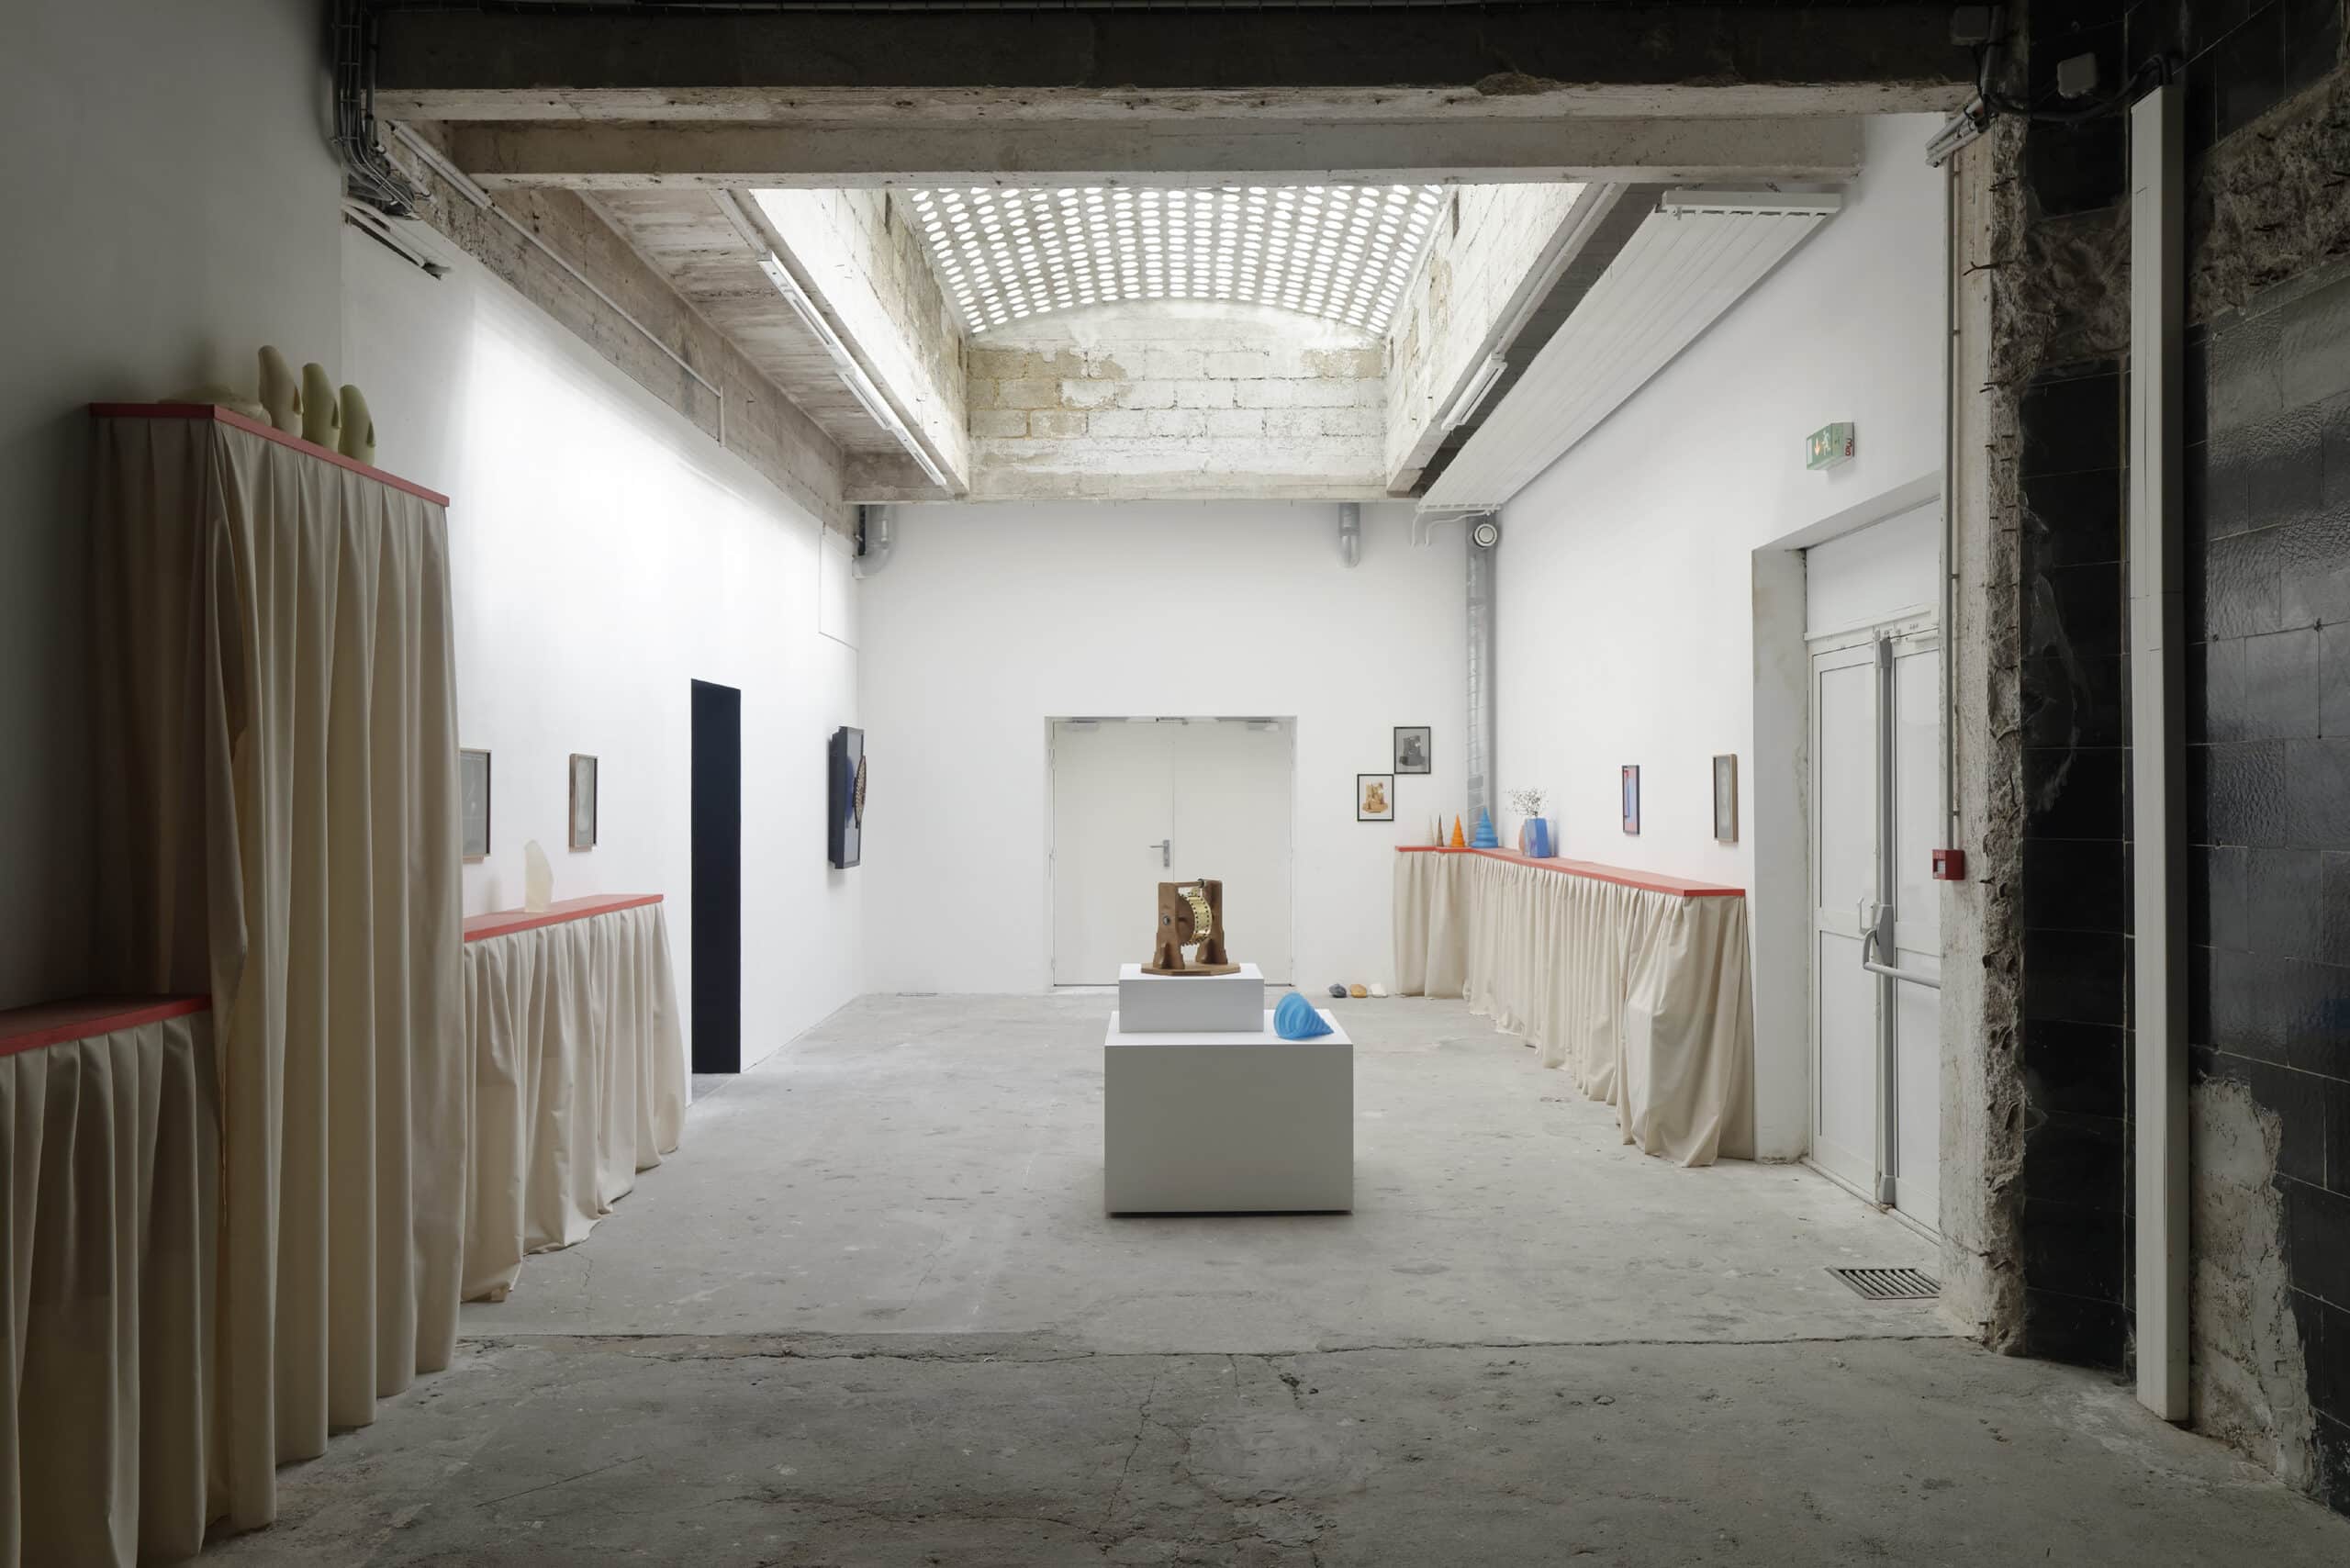 View of the “Bénin” exhibition at Passerelle Centre d'art contemporain, September 26, 2015 – January 2, 2016, Brest © photo: Aurélien Mole